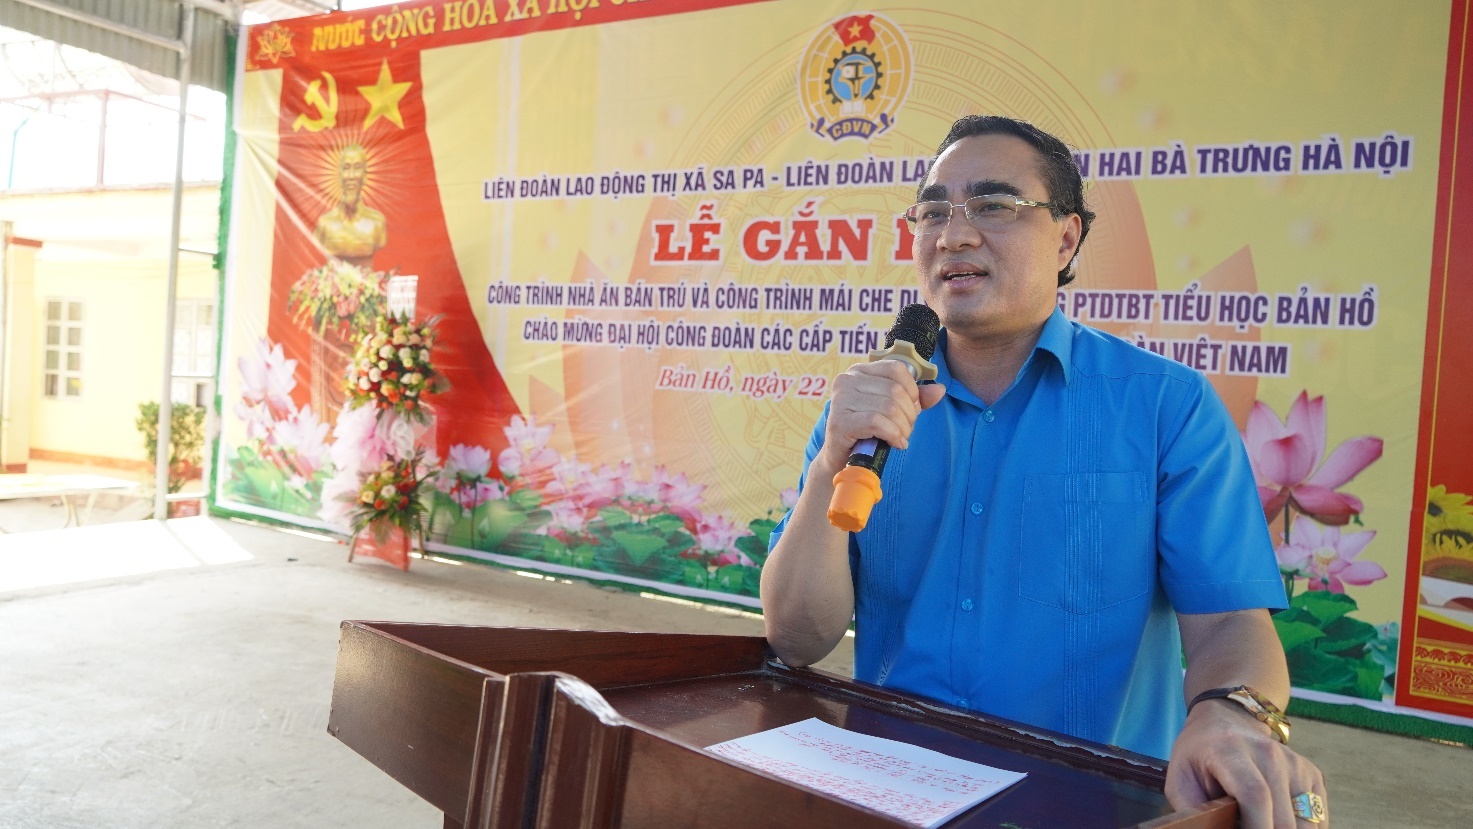 Lào Cai: Gắn biển 2 công trình chào mừng đại hội công đoàn các cấp, nhiệm kỳ 2023-2028